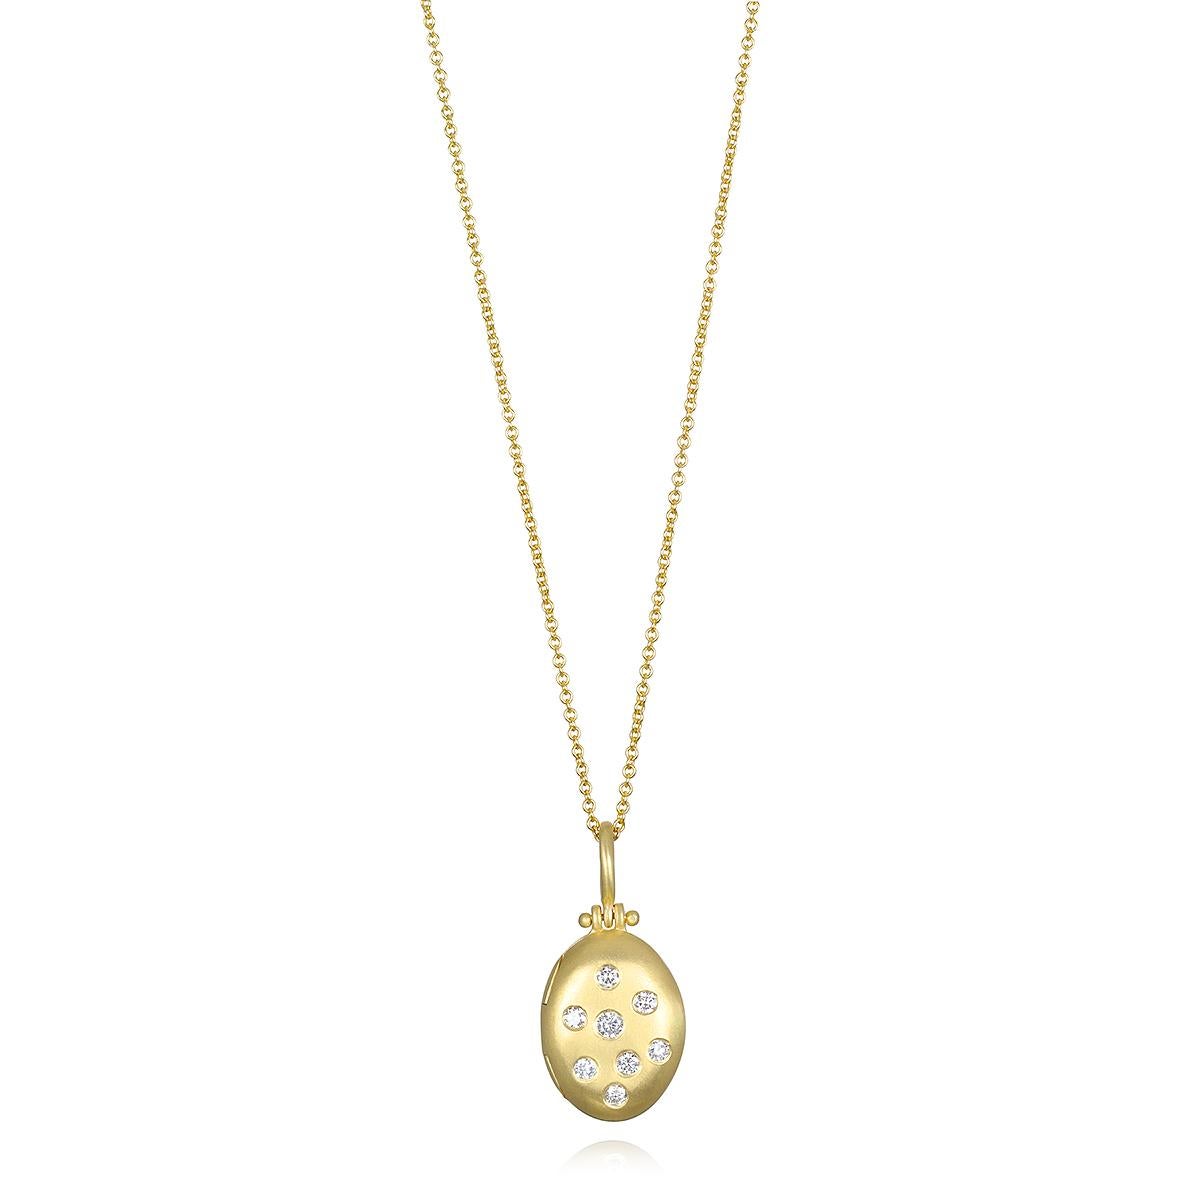 Das kleine ovale Medaillon von Faye Kim aus 18 Karat Gold und Diamanten verbindet Substanz mit Stil und bietet genau die richtige Menge an Glanz. Dieses handgefertigte und mattierte Medaillon kann mit einer Gravur personalisiert und mit anderen